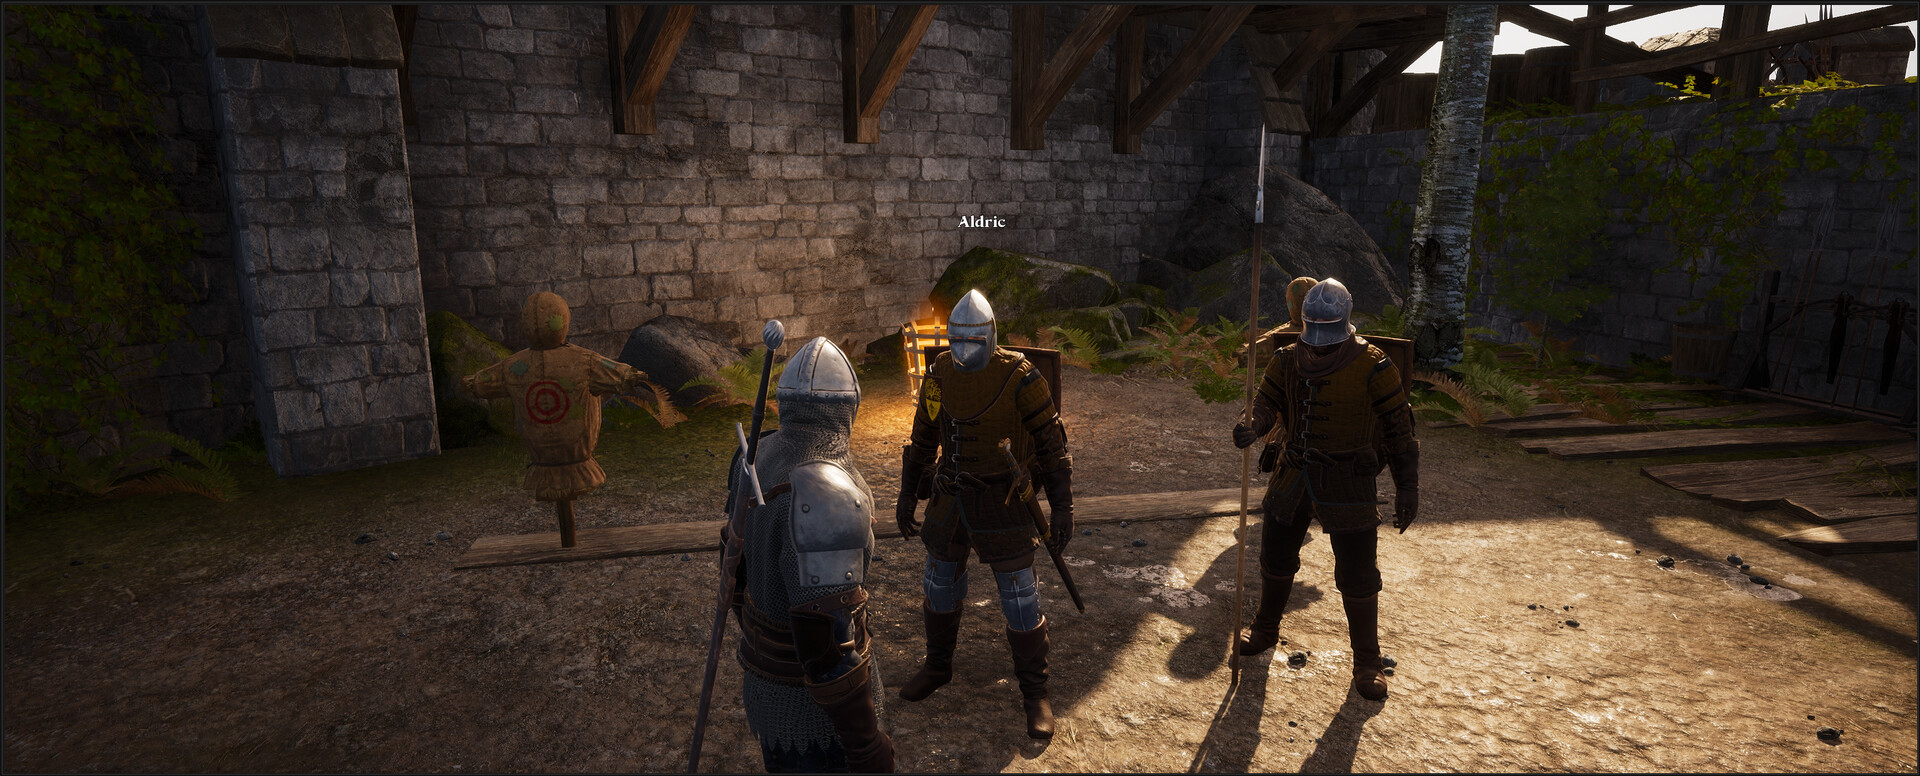 Скриншот из игры Knight